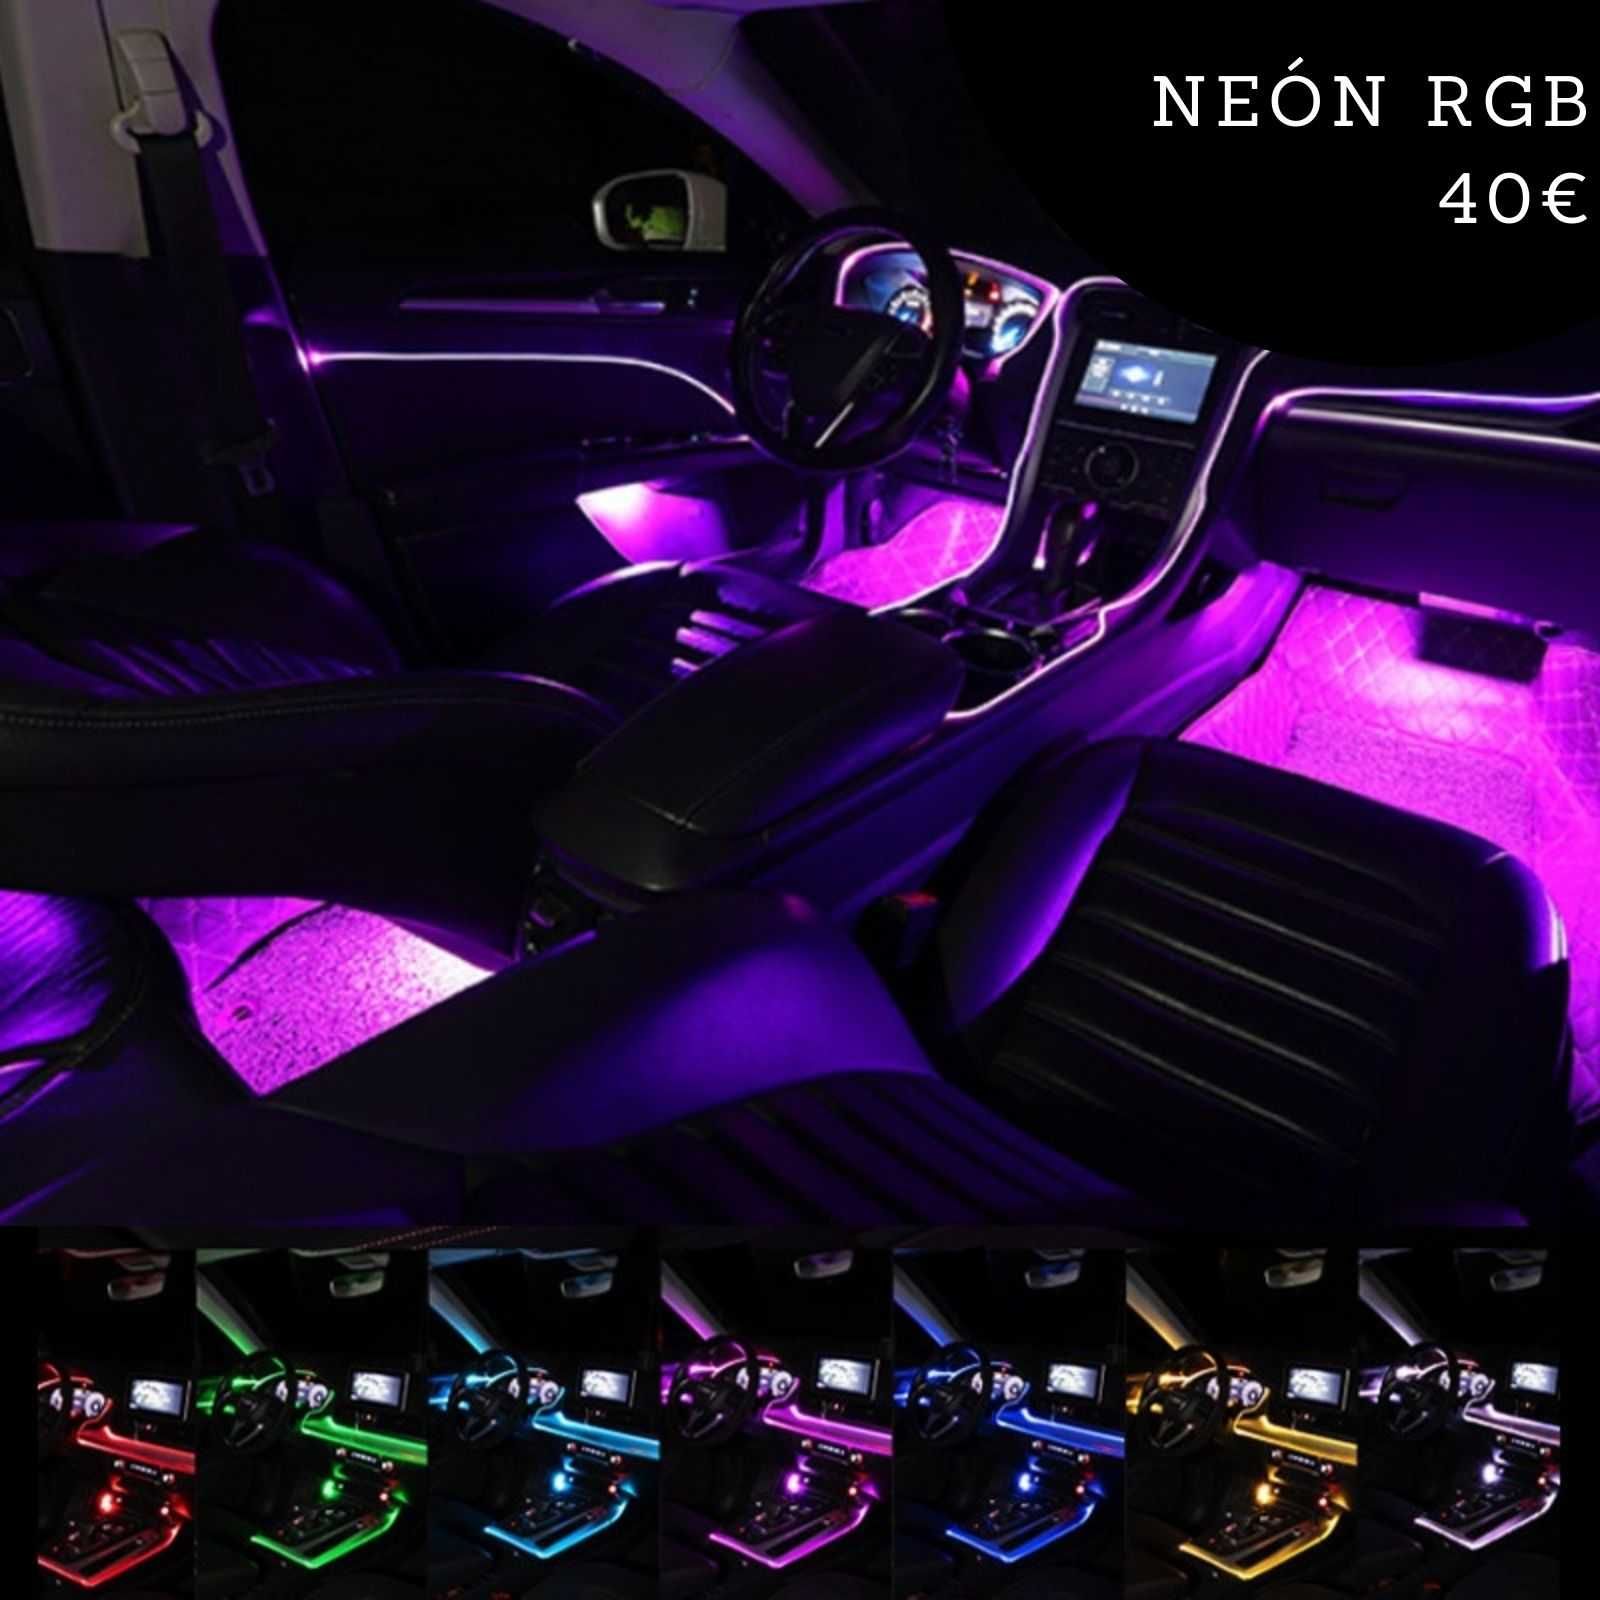 LED RGB para Carro *NOVO* modelo 5050